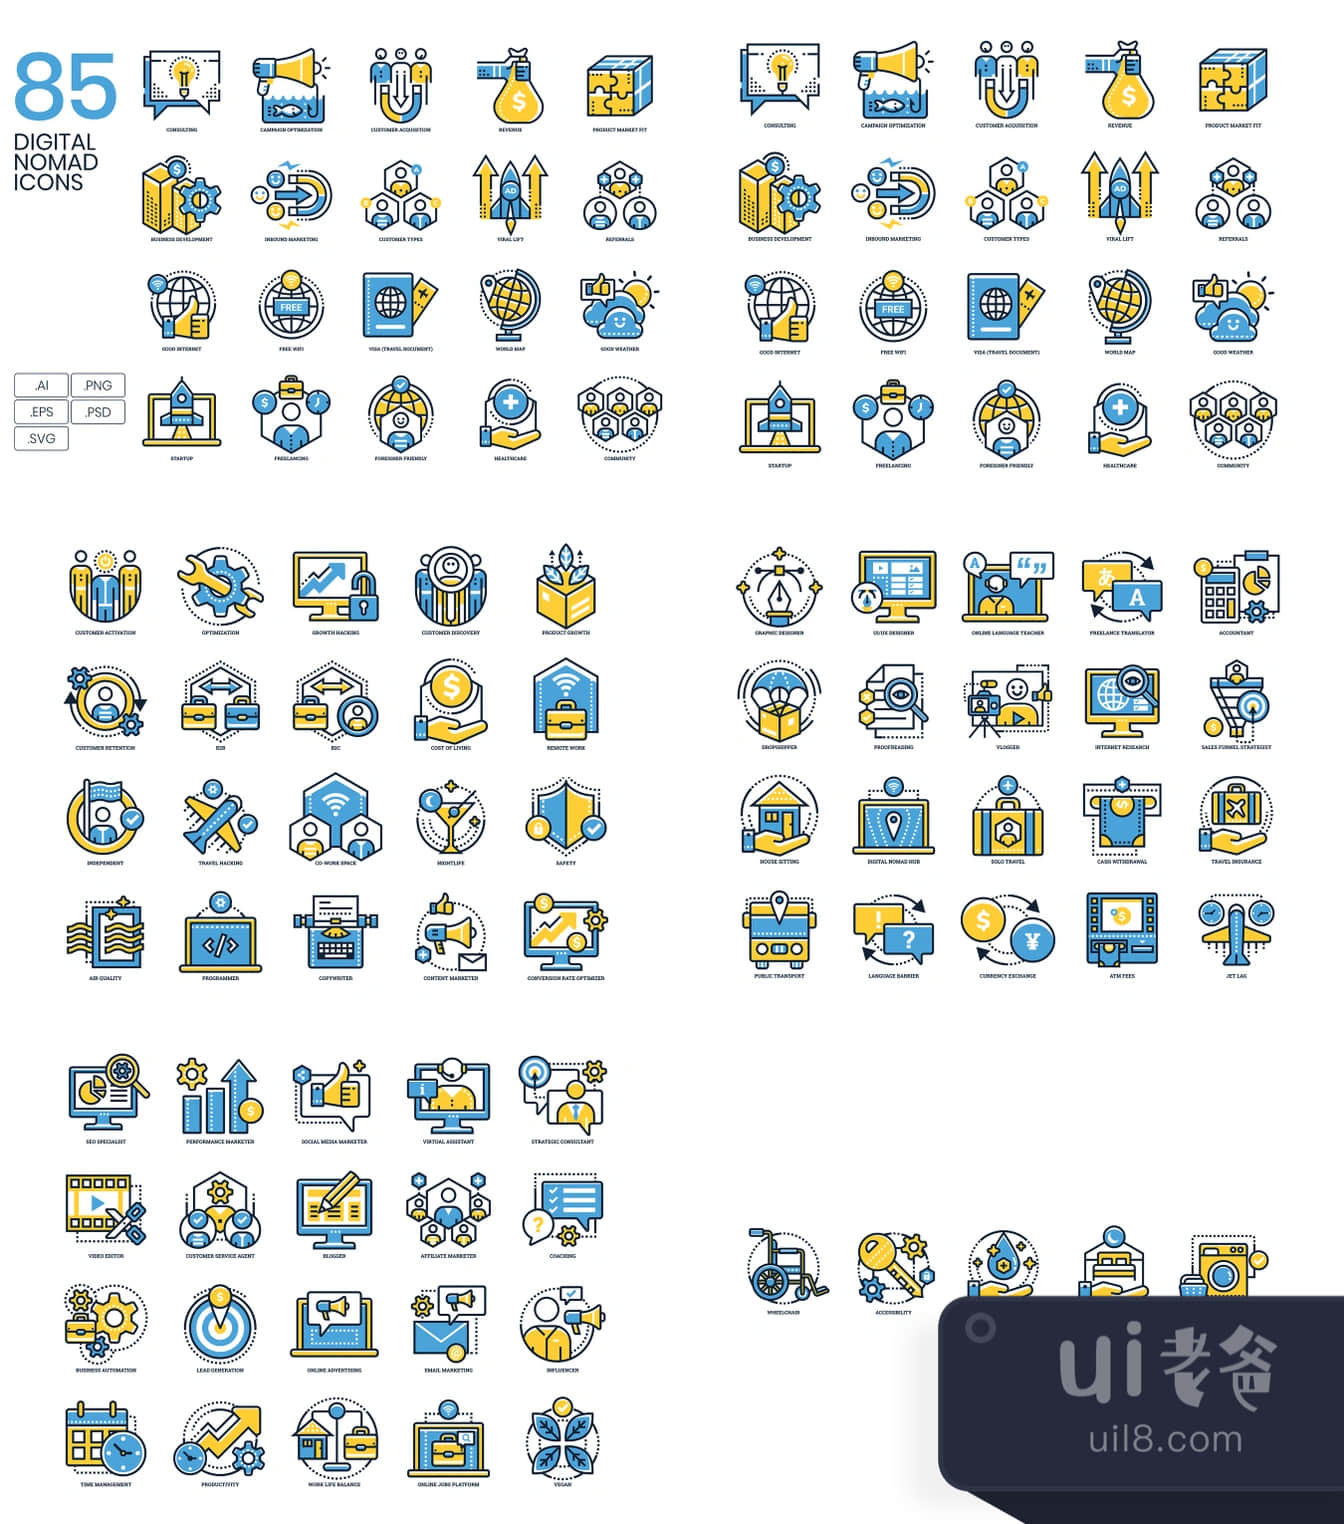 85个数字游民图标 (85 Digital Nomad Icons)插图1